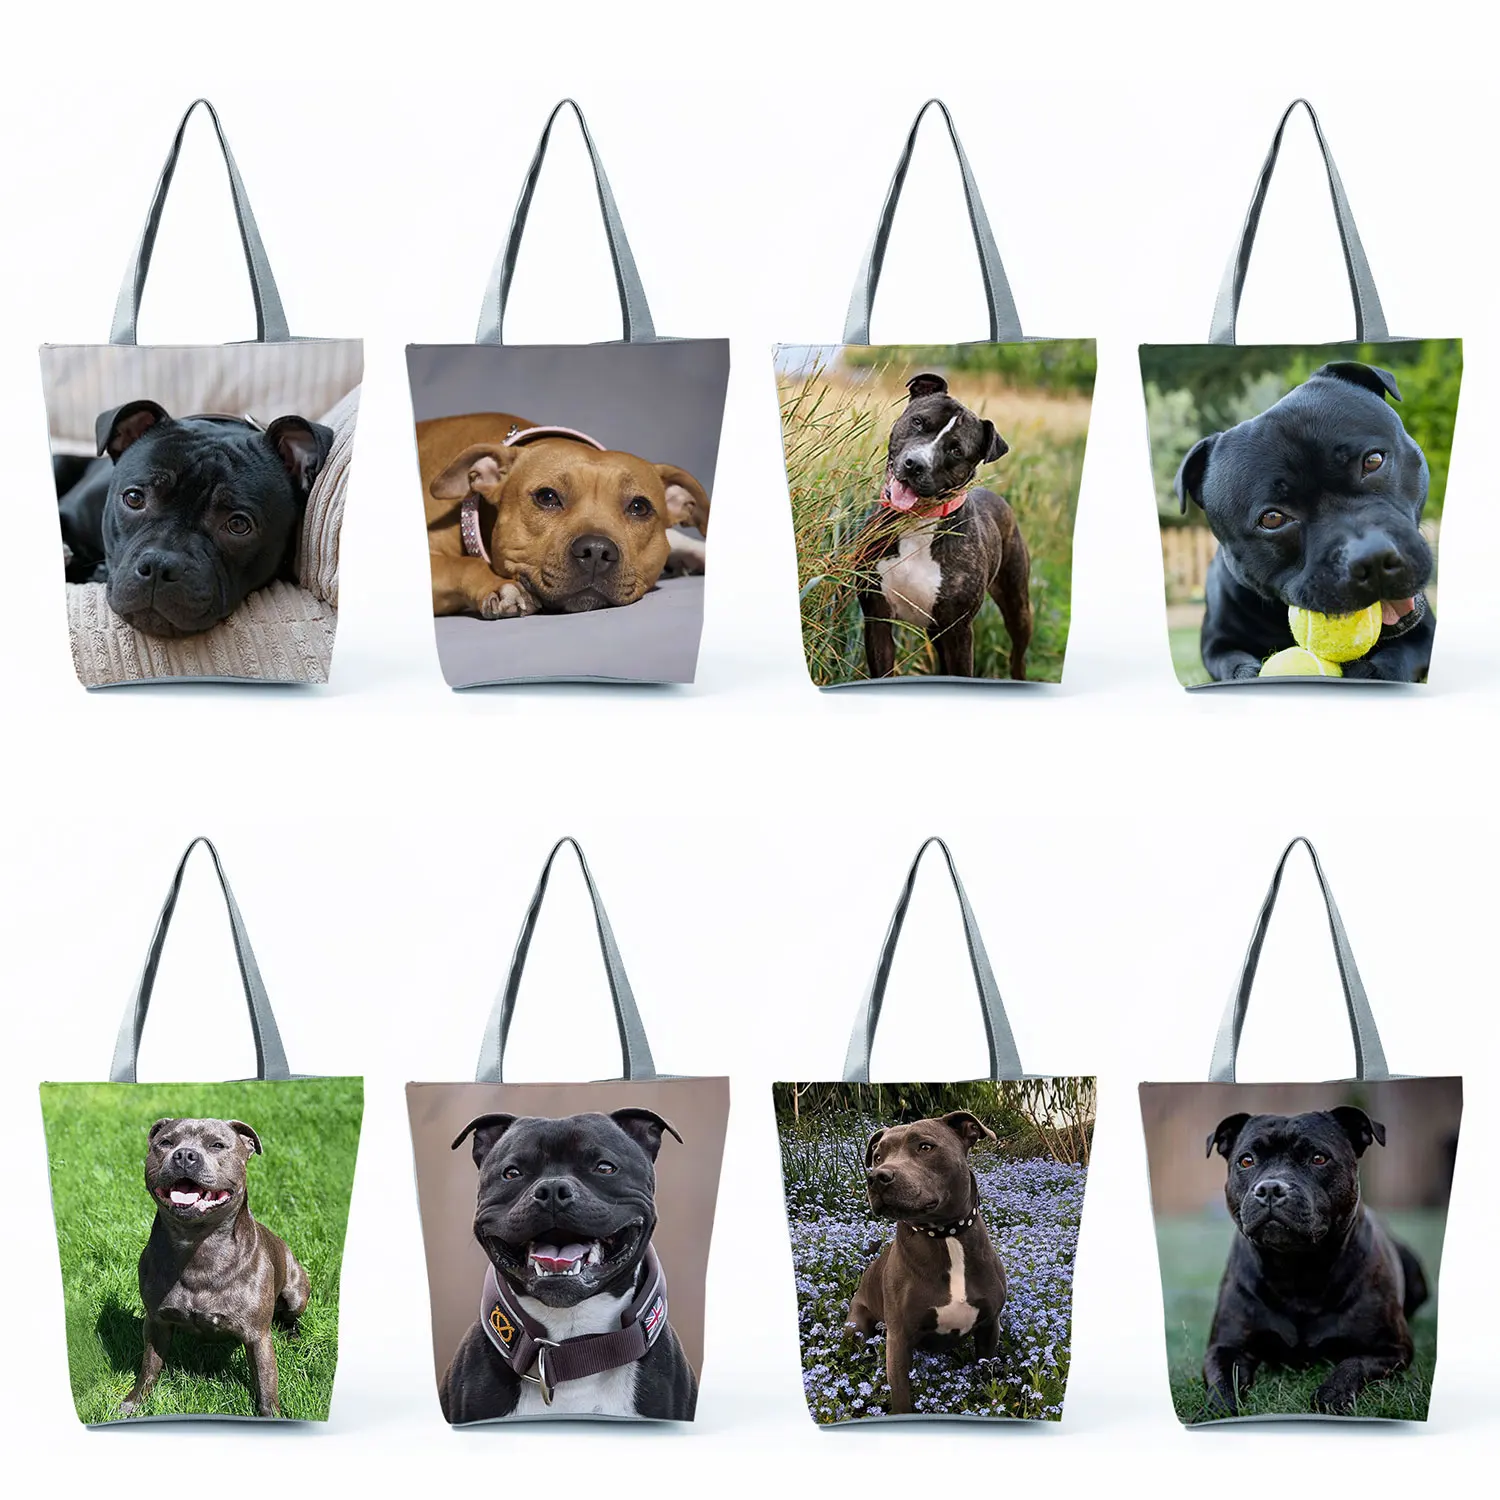 

Портативные вместительные сумки с милым принтом собаки, многоразовая сумка для покупок, женские пляжные сумки-тоуты с животными, терьер быка в стиле Стаффорда